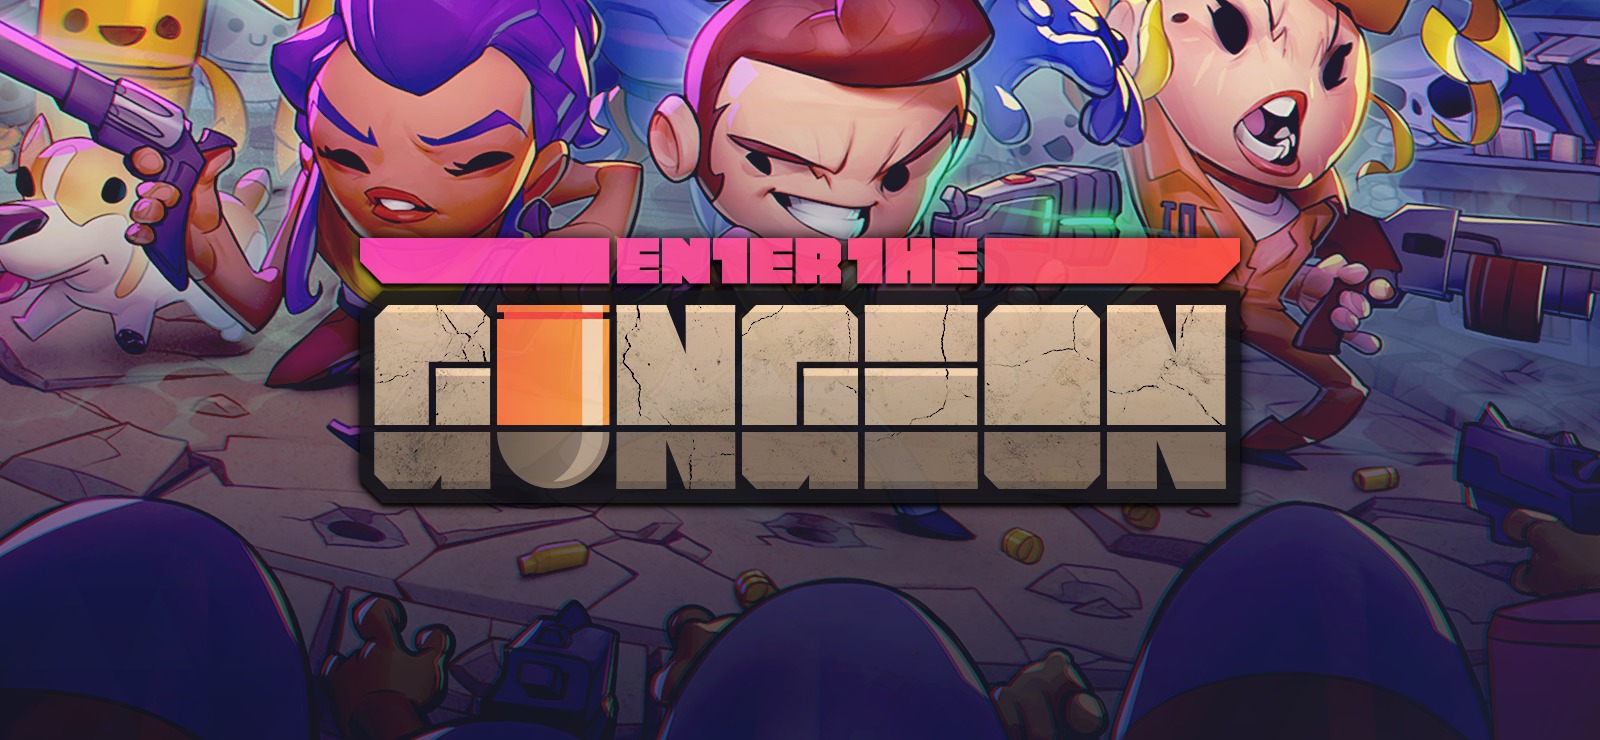 Enter the Gungeon download